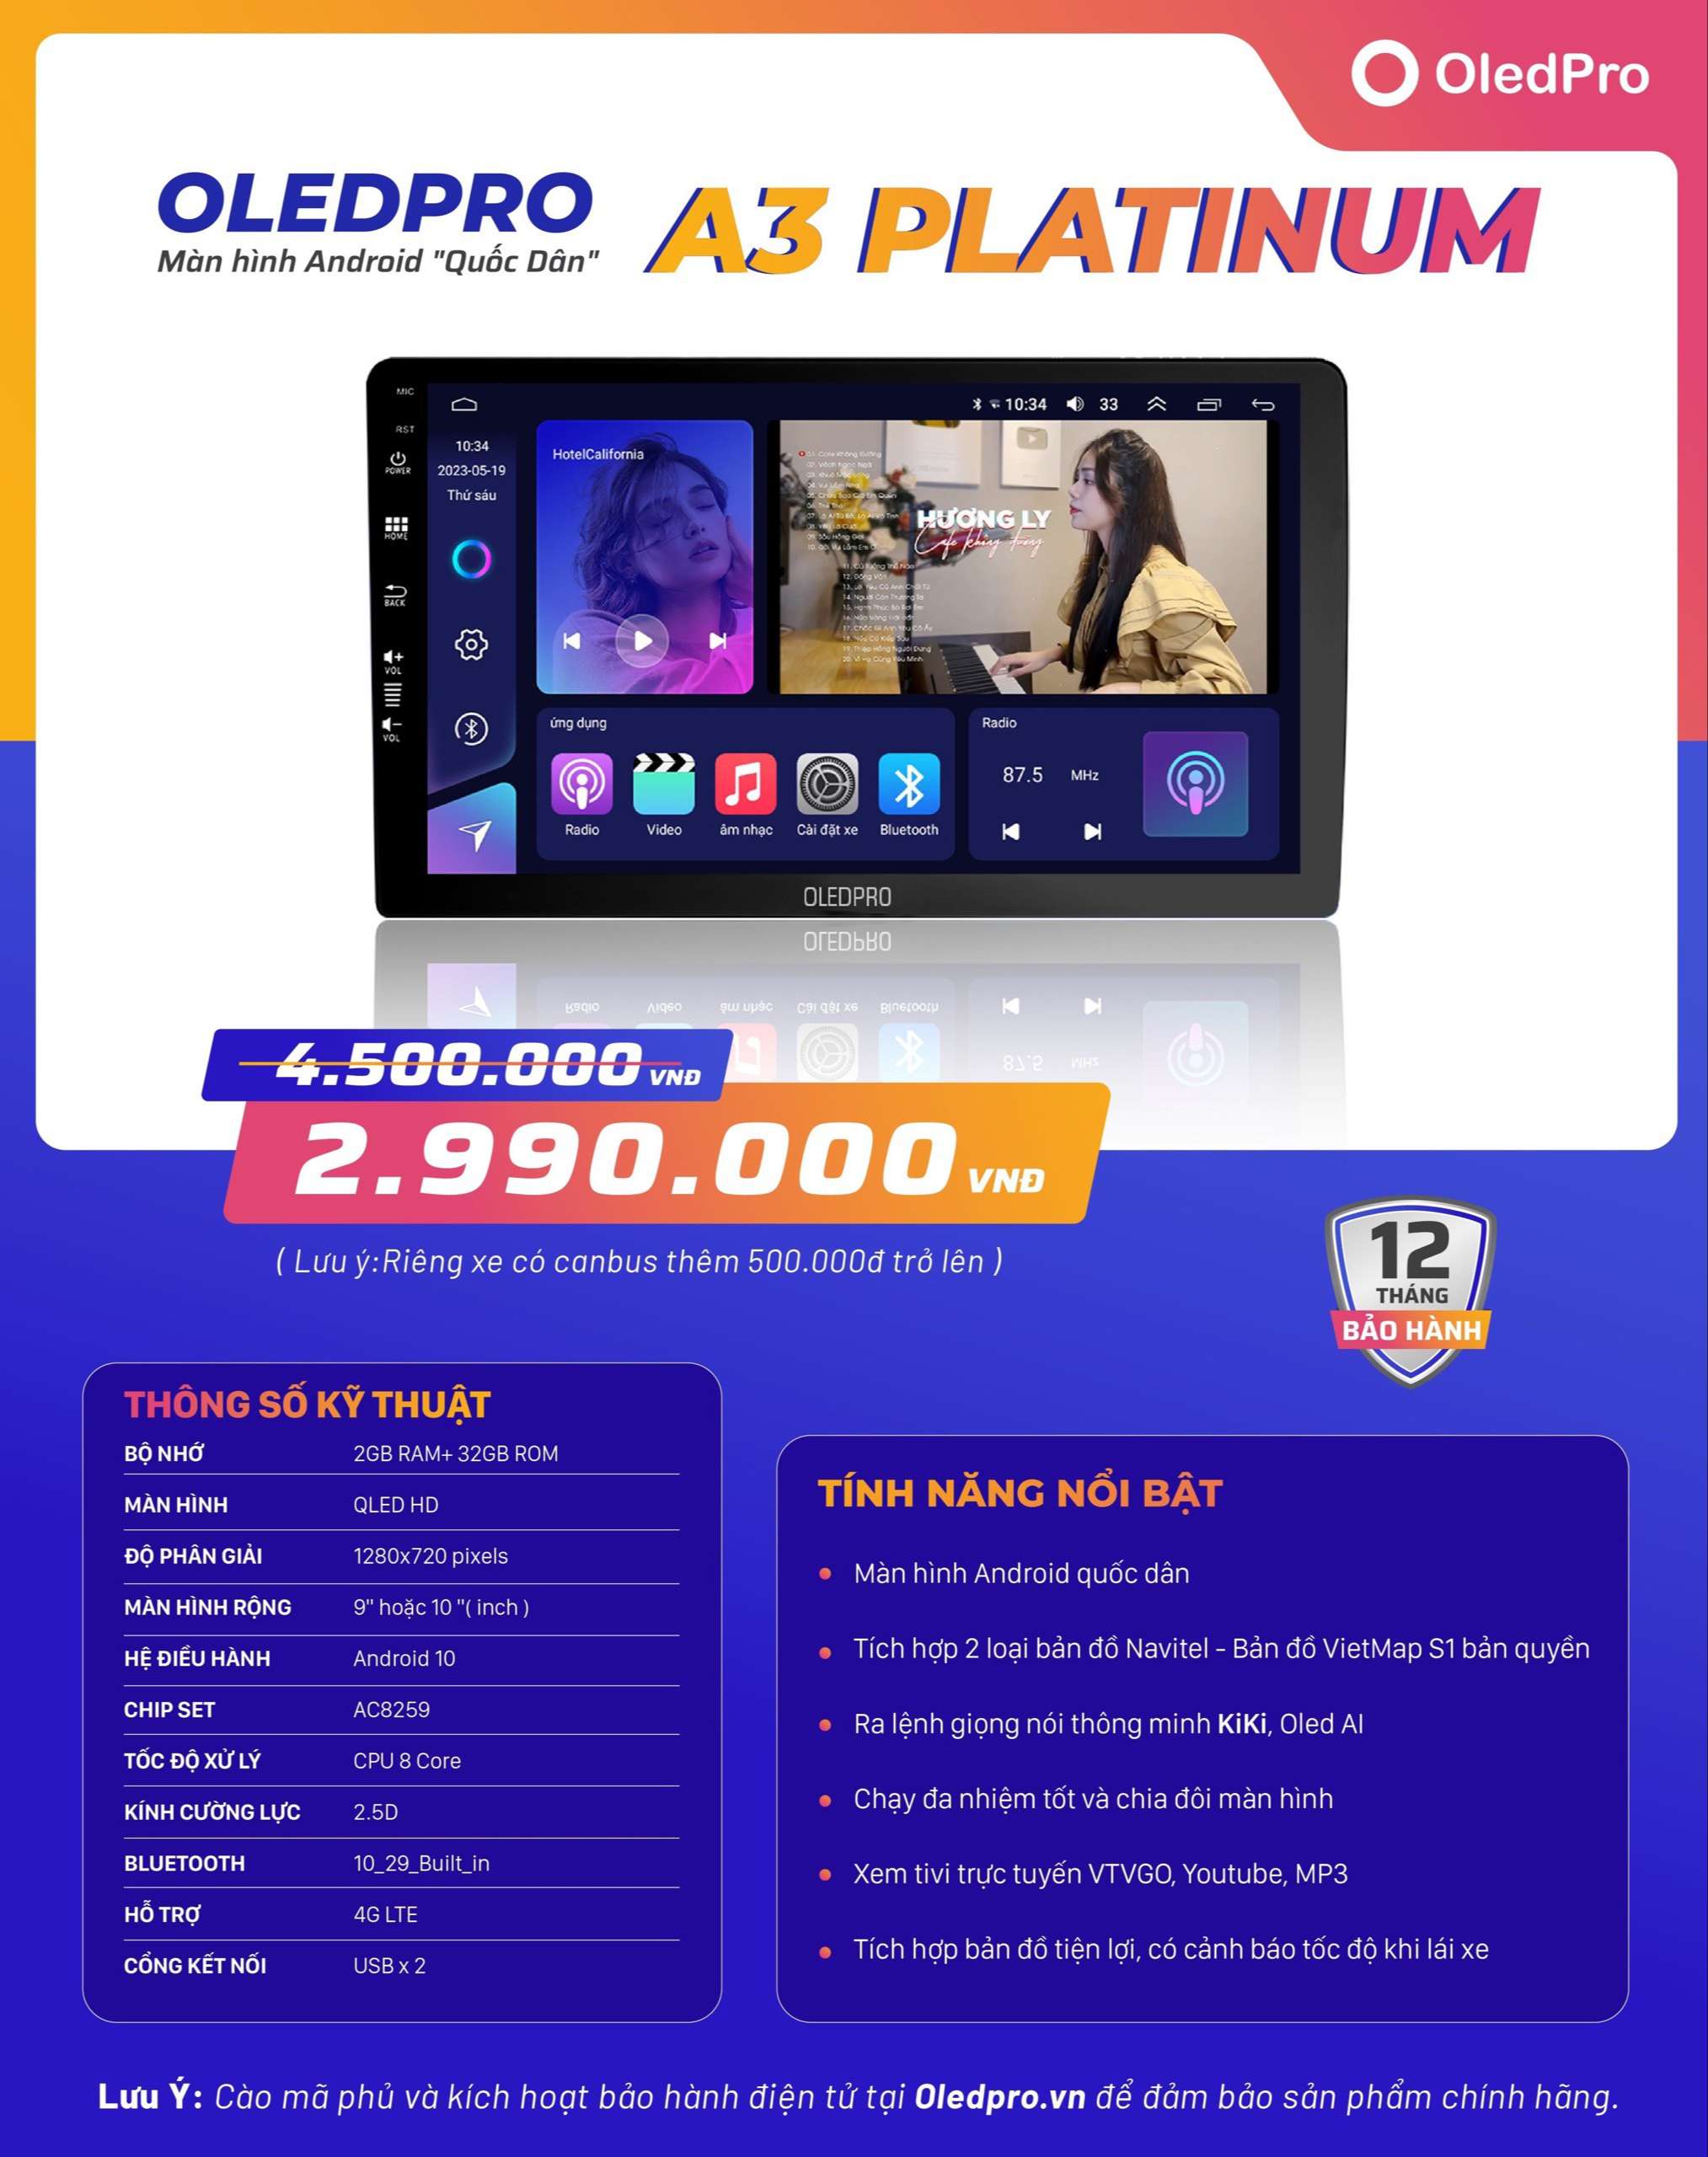 Thông số kỹ thuật màn hình oled pro A3 Platinum